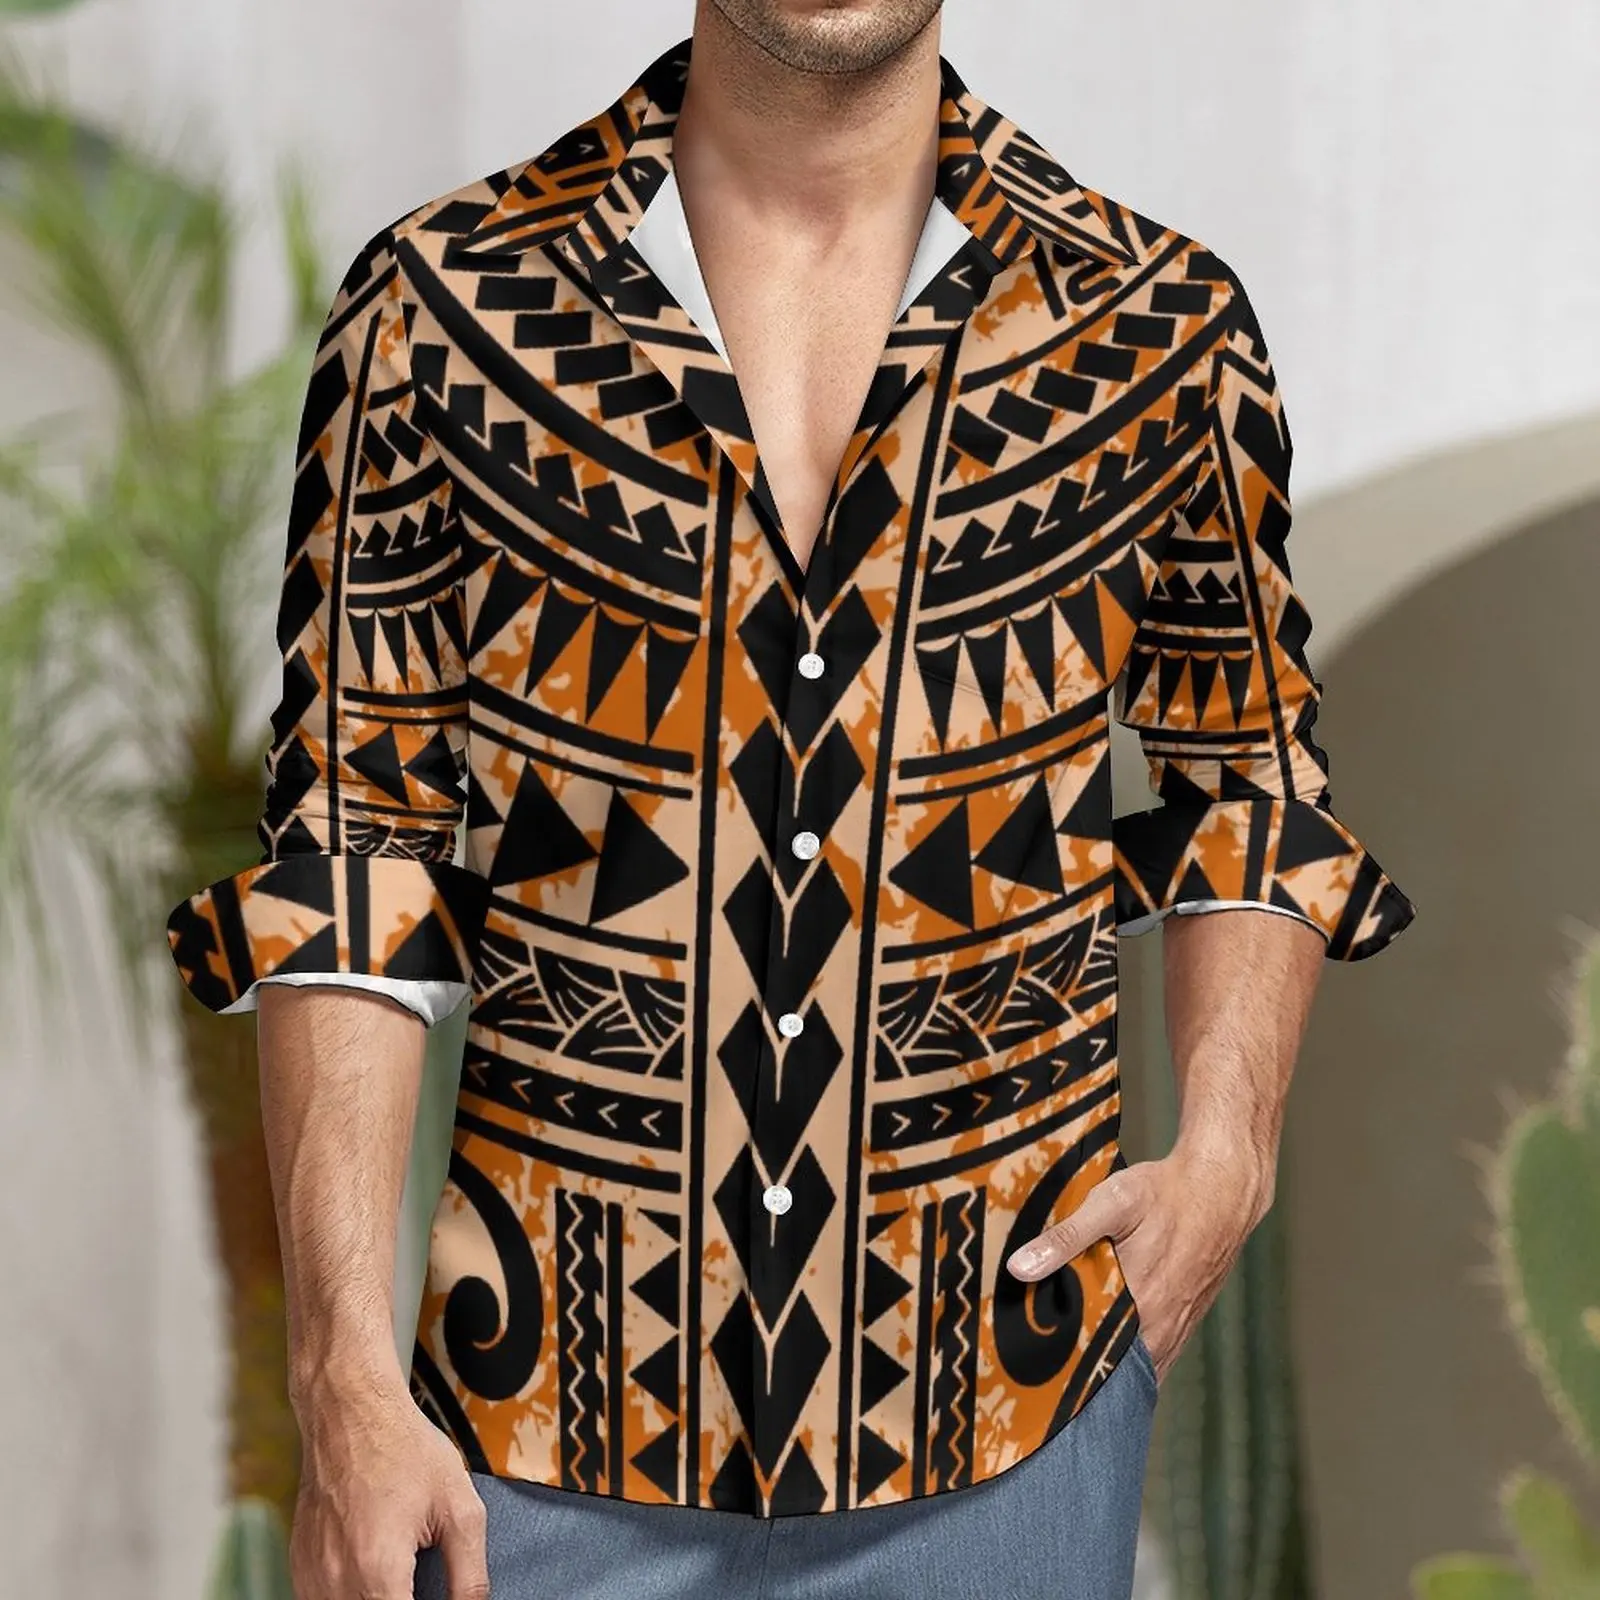 رخيصة البولينيزية كبير حجم الرجال قميص الرجعية tatau القبلية تصميم samoan القمصان عارضة طويلة الأكمام قمم جزيرة الرسمي قمصان للرجال